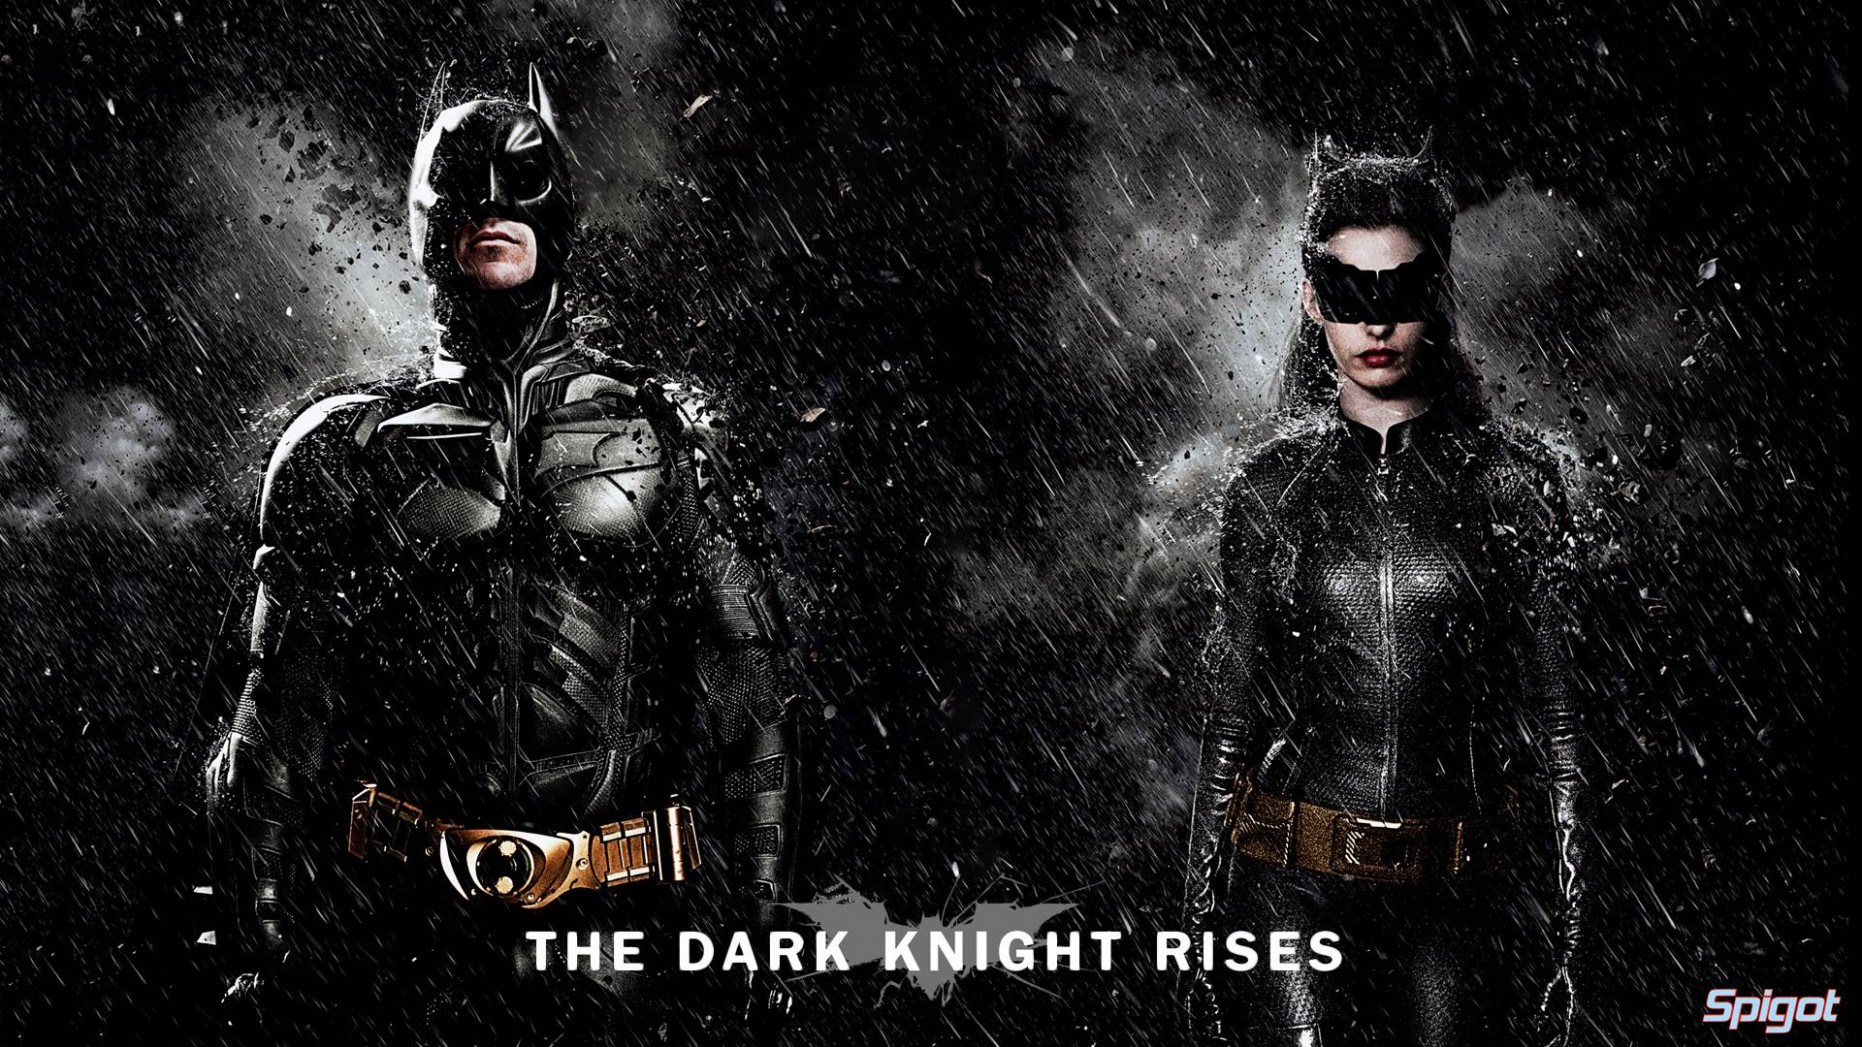 The Dark Knight Rises Wallpapers Hd - Ian Bohen The Dark Knight Rises - HD Wallpaper 